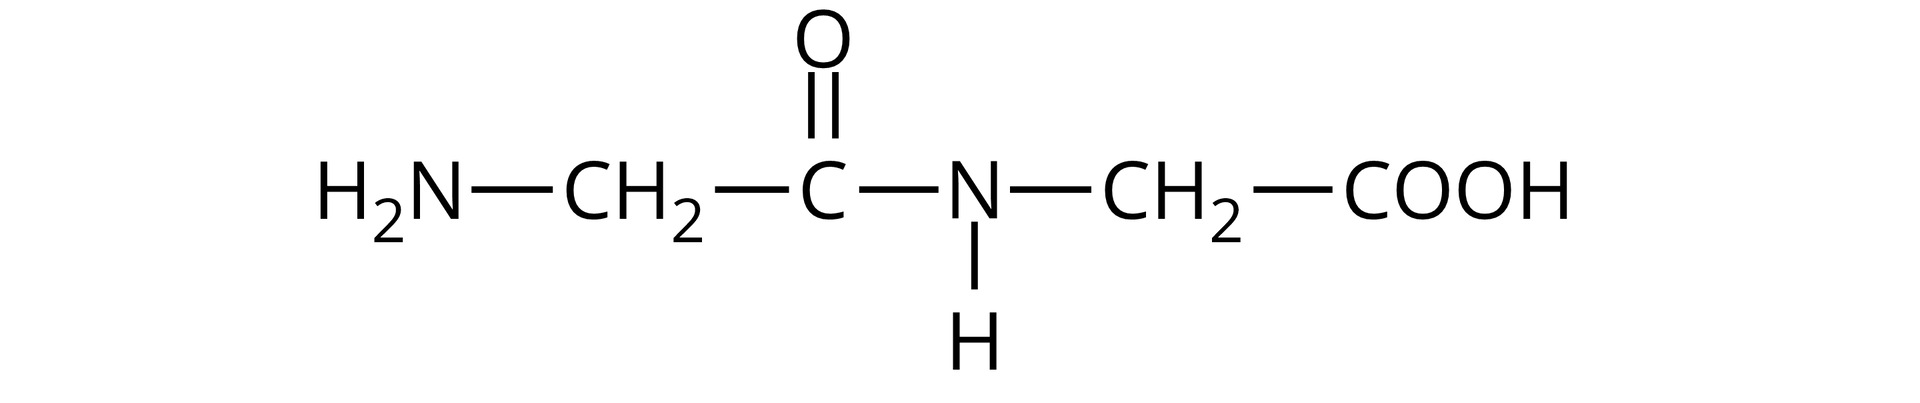 Ilustracja przedstawiająca wzór cząsteczki glicyloglicyny zbudowanej z grupy NH2 połączonej z grupą metylenową CH2 związaną z atomem węgla wchodzącym w skład wiązania peptydowego i połączonym za pomocą wiązania podwójnego z atomem tlenu oraz za pomocą wiązania pojedynczego z atomem azotu podstawionym atomem wodoru oraz grupą metylenową CH2 połączoną z grupą karboksylową COOH. Po lewej stronie struktury zaznaczono grupę aminową pochodzącą od pierwszej cząsteczki aminokwasu i stanowiącą N‑koniec, po prawej stronie zaznaczono grupę karboksylową pochodzącą od drugiej cząsteczki aminokwasu i stanowiącą C‑koniec peptydu. 